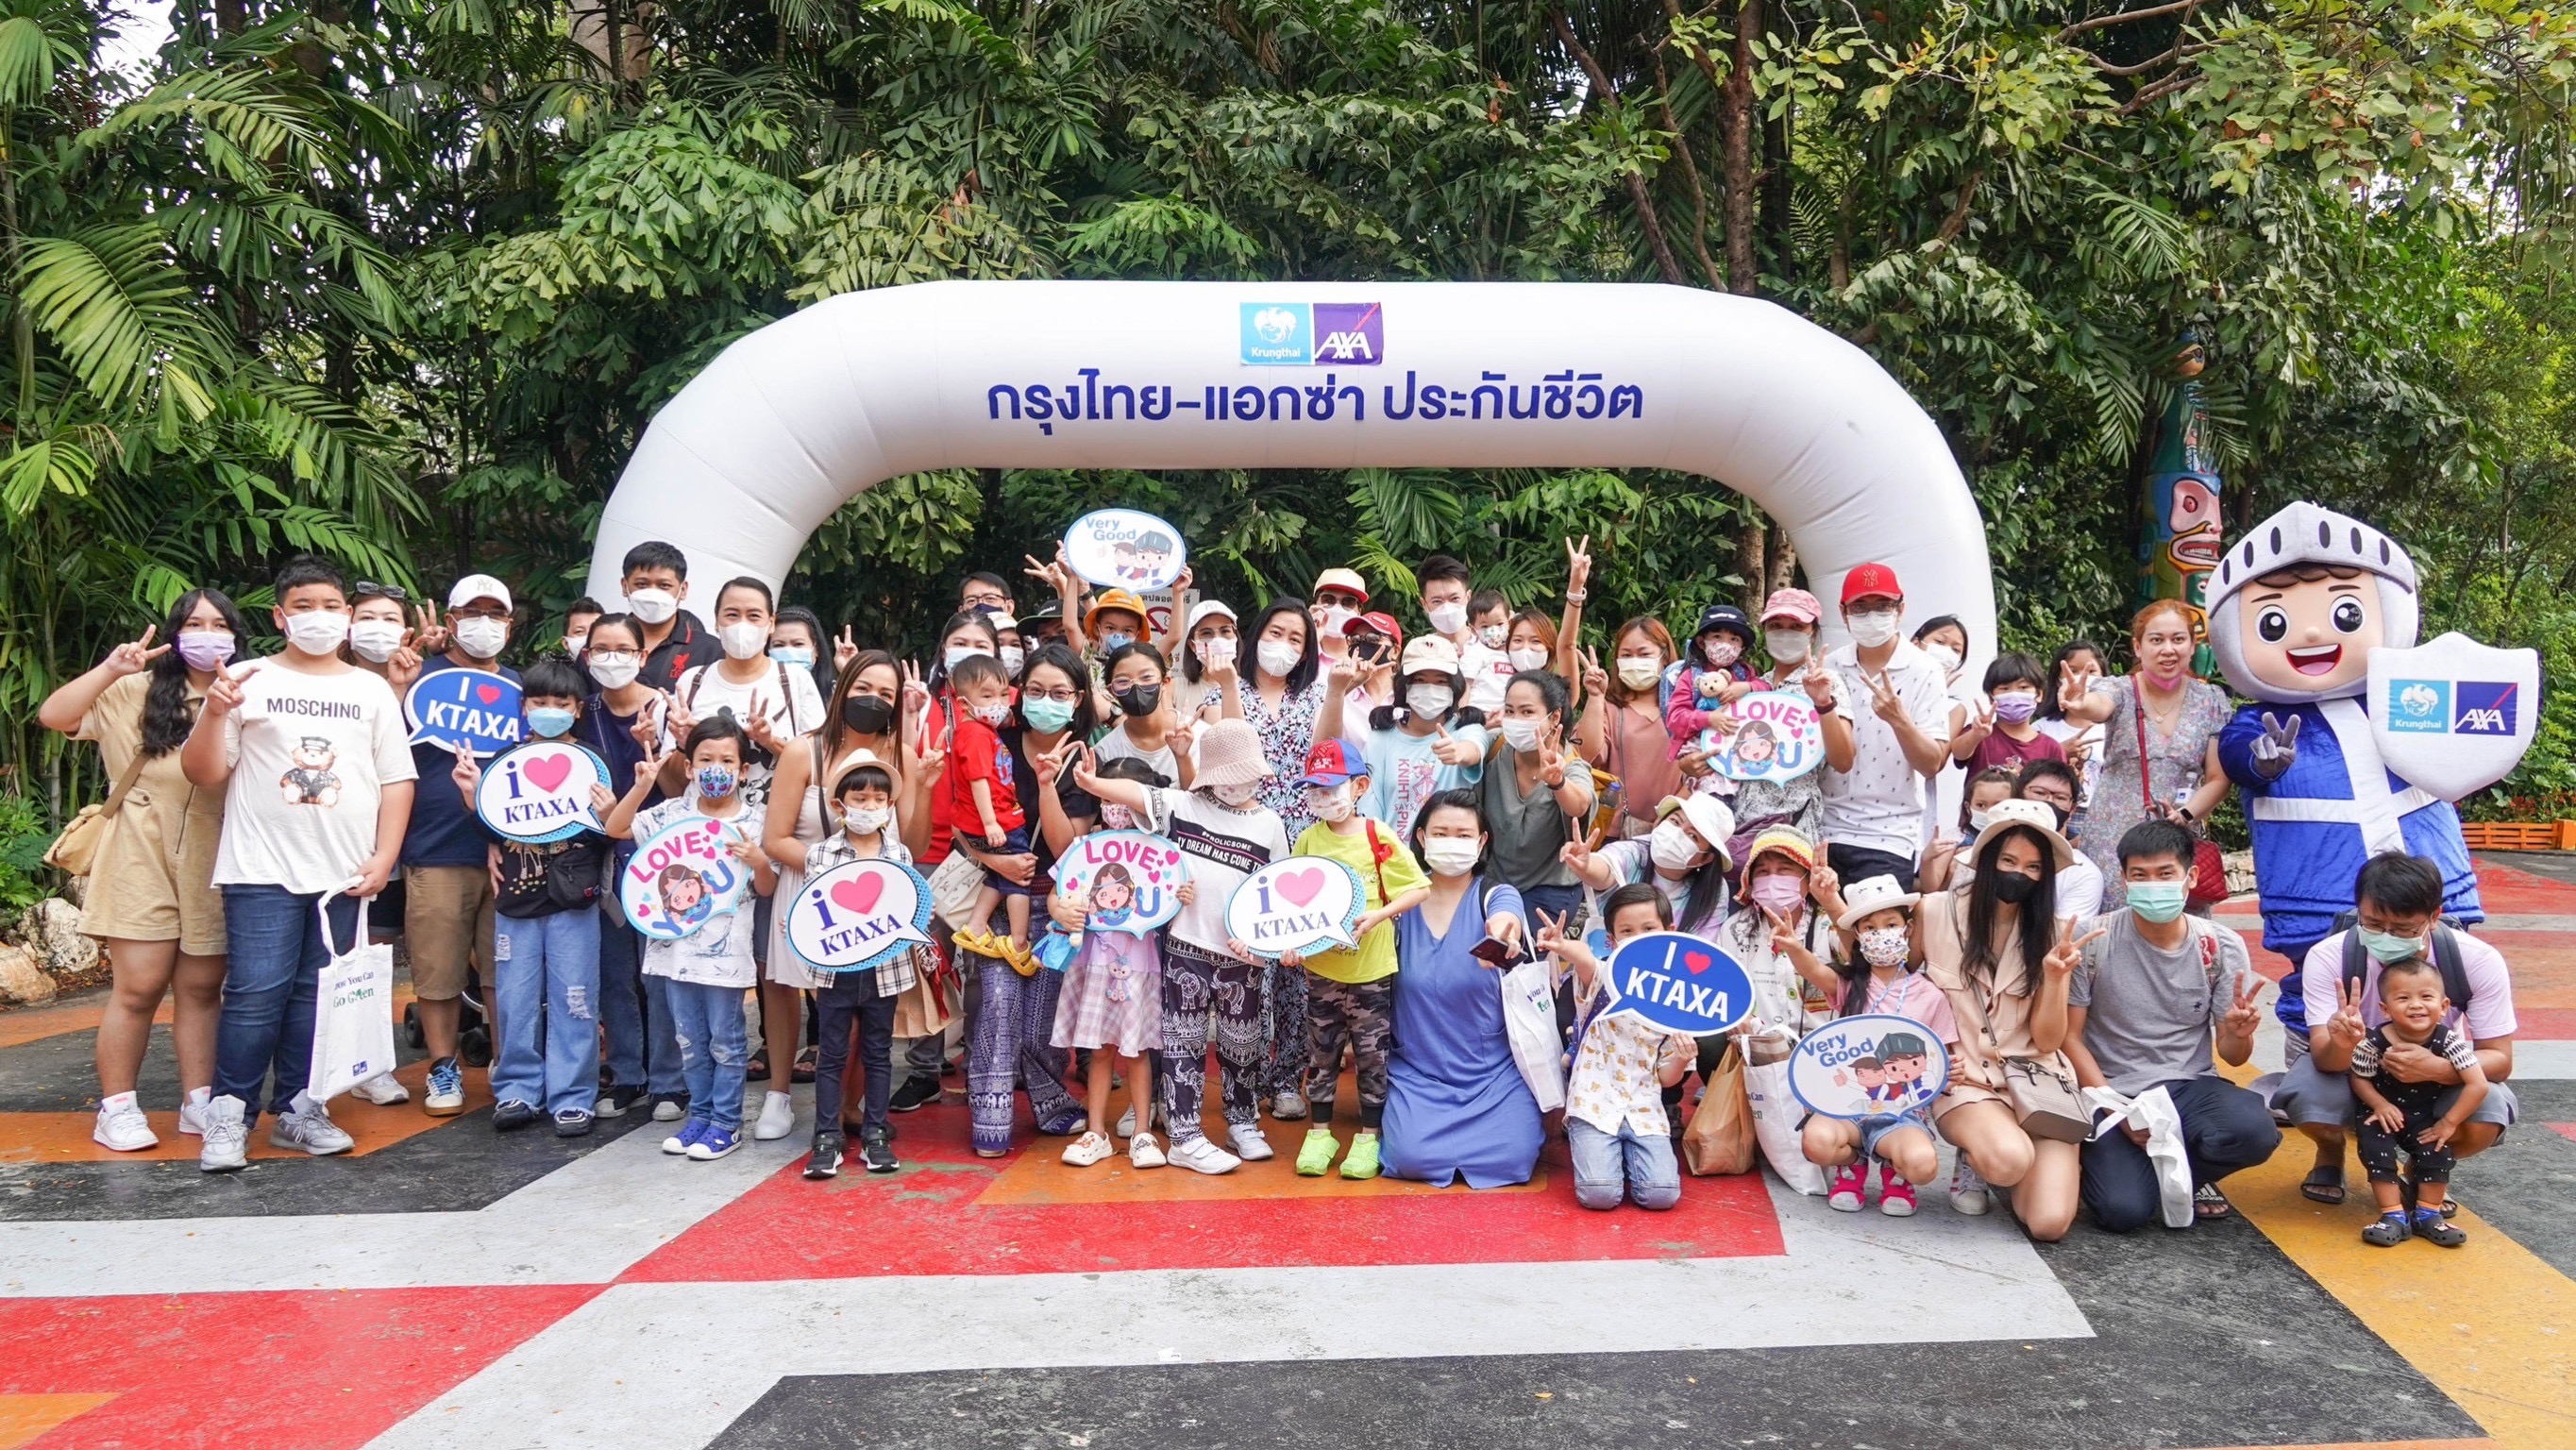 กรุงไทย–แอกซ่า ประกันชีวิต จัดงาน “Family Day สนุกทั้งครอบครัว ทัวร์ซาฟารีเวิร์ด ปี 2566” เอาใจวัยรุ่นฟันน้ำนม ในวันเด็กแห่งชาติ